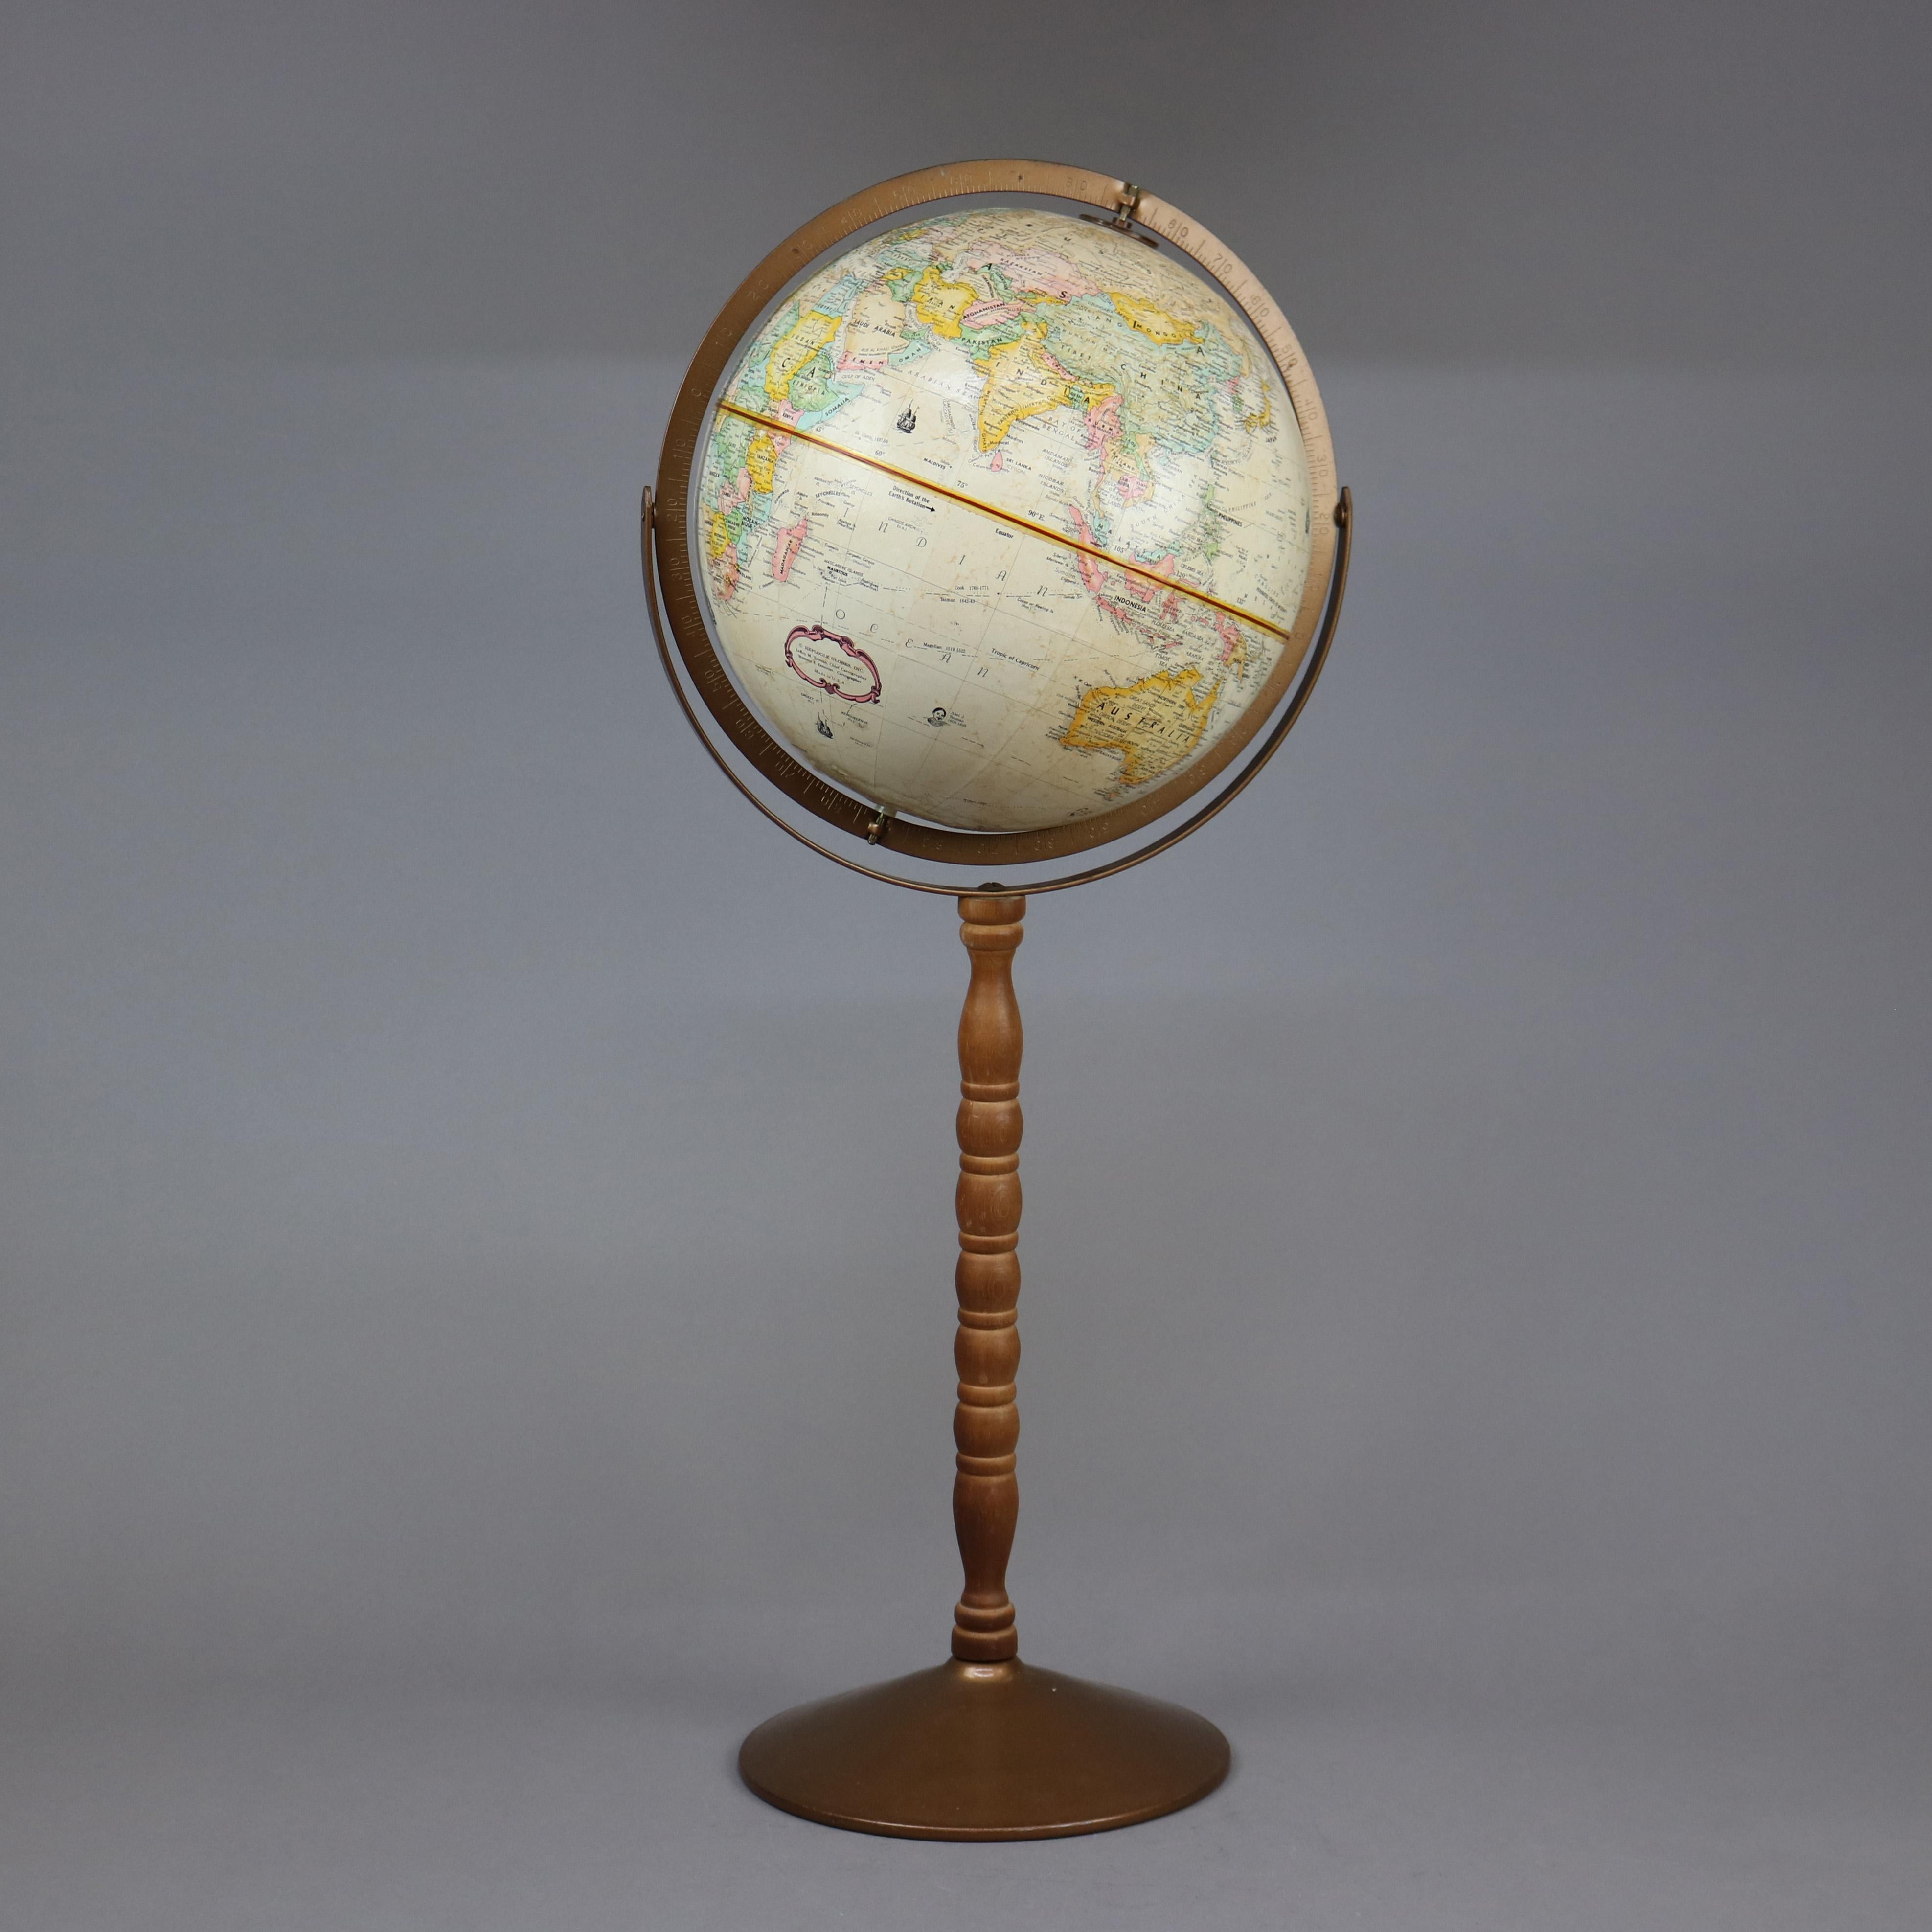 globemaster 12 inch diameter globe